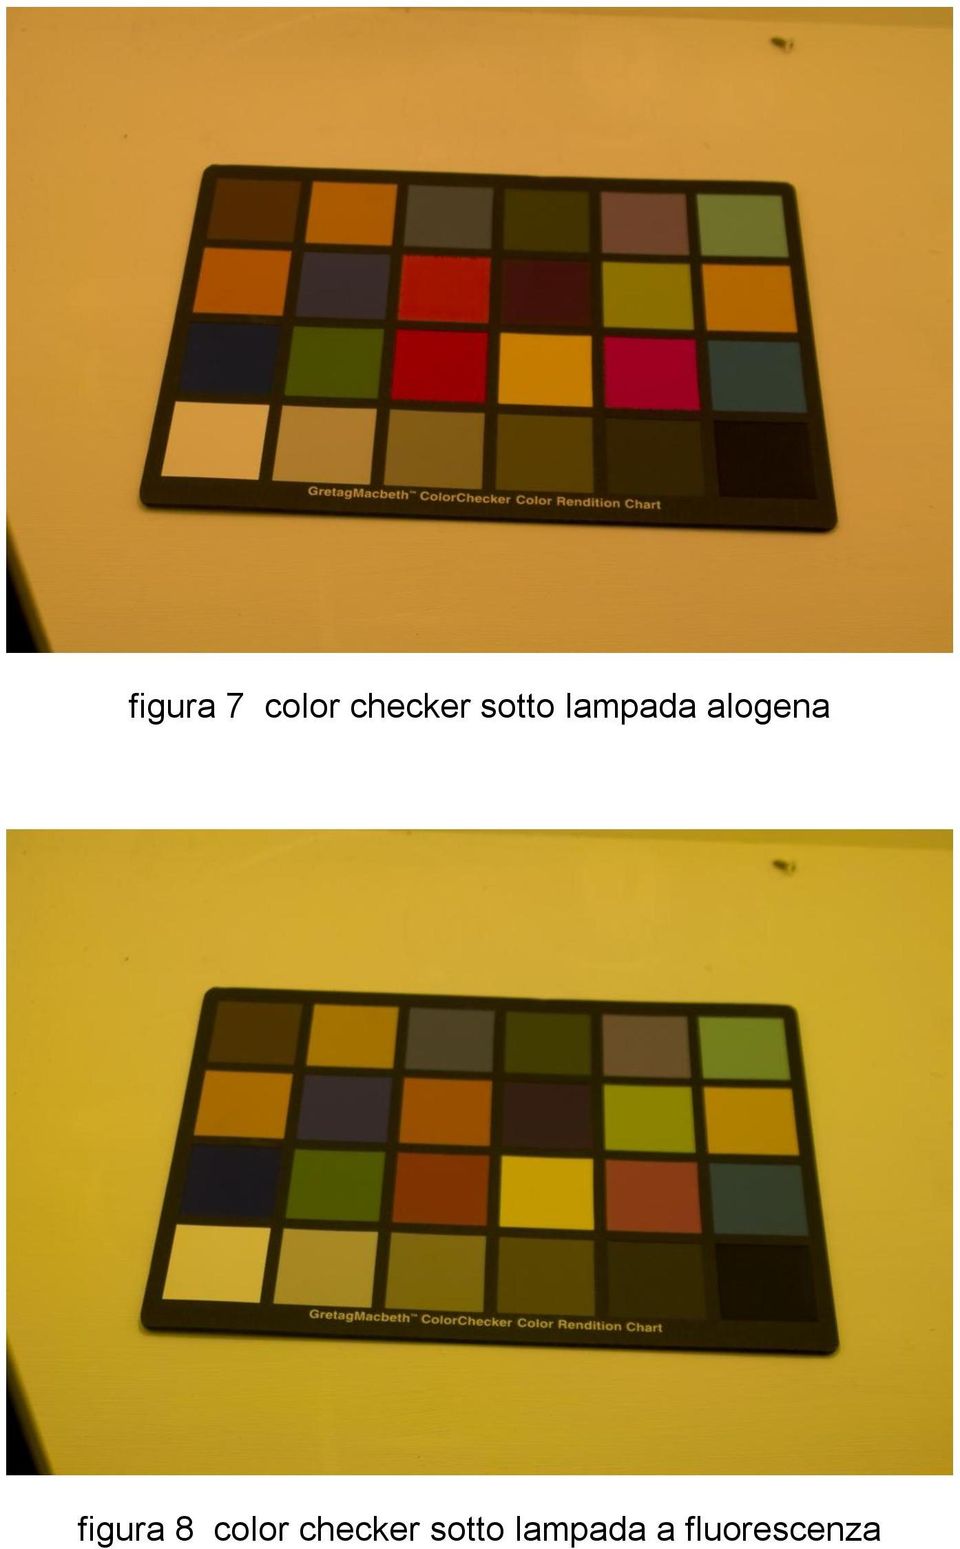 figura 8 color checker